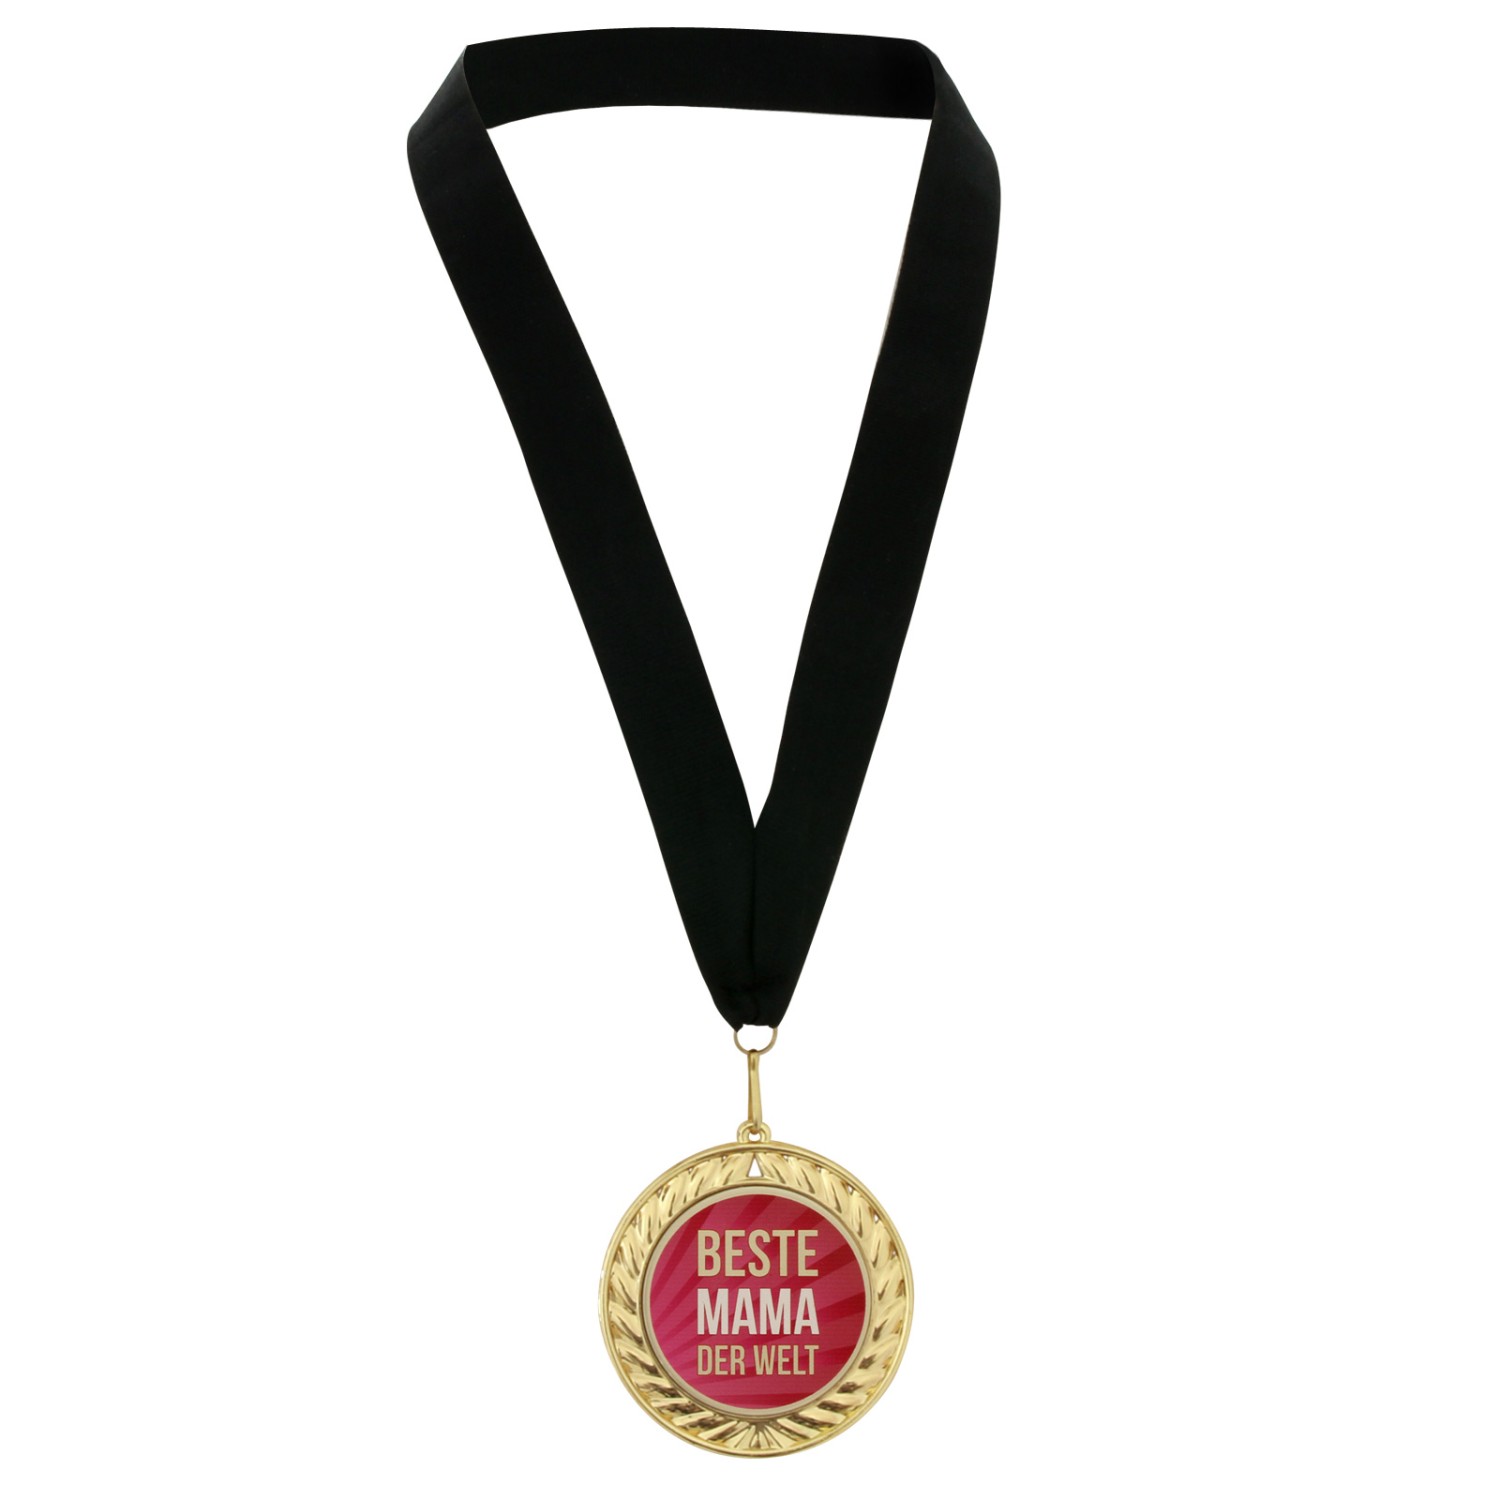 2. Foto Medaille Beste Mama der Welt in Etui mit schwarzem Medaillenband